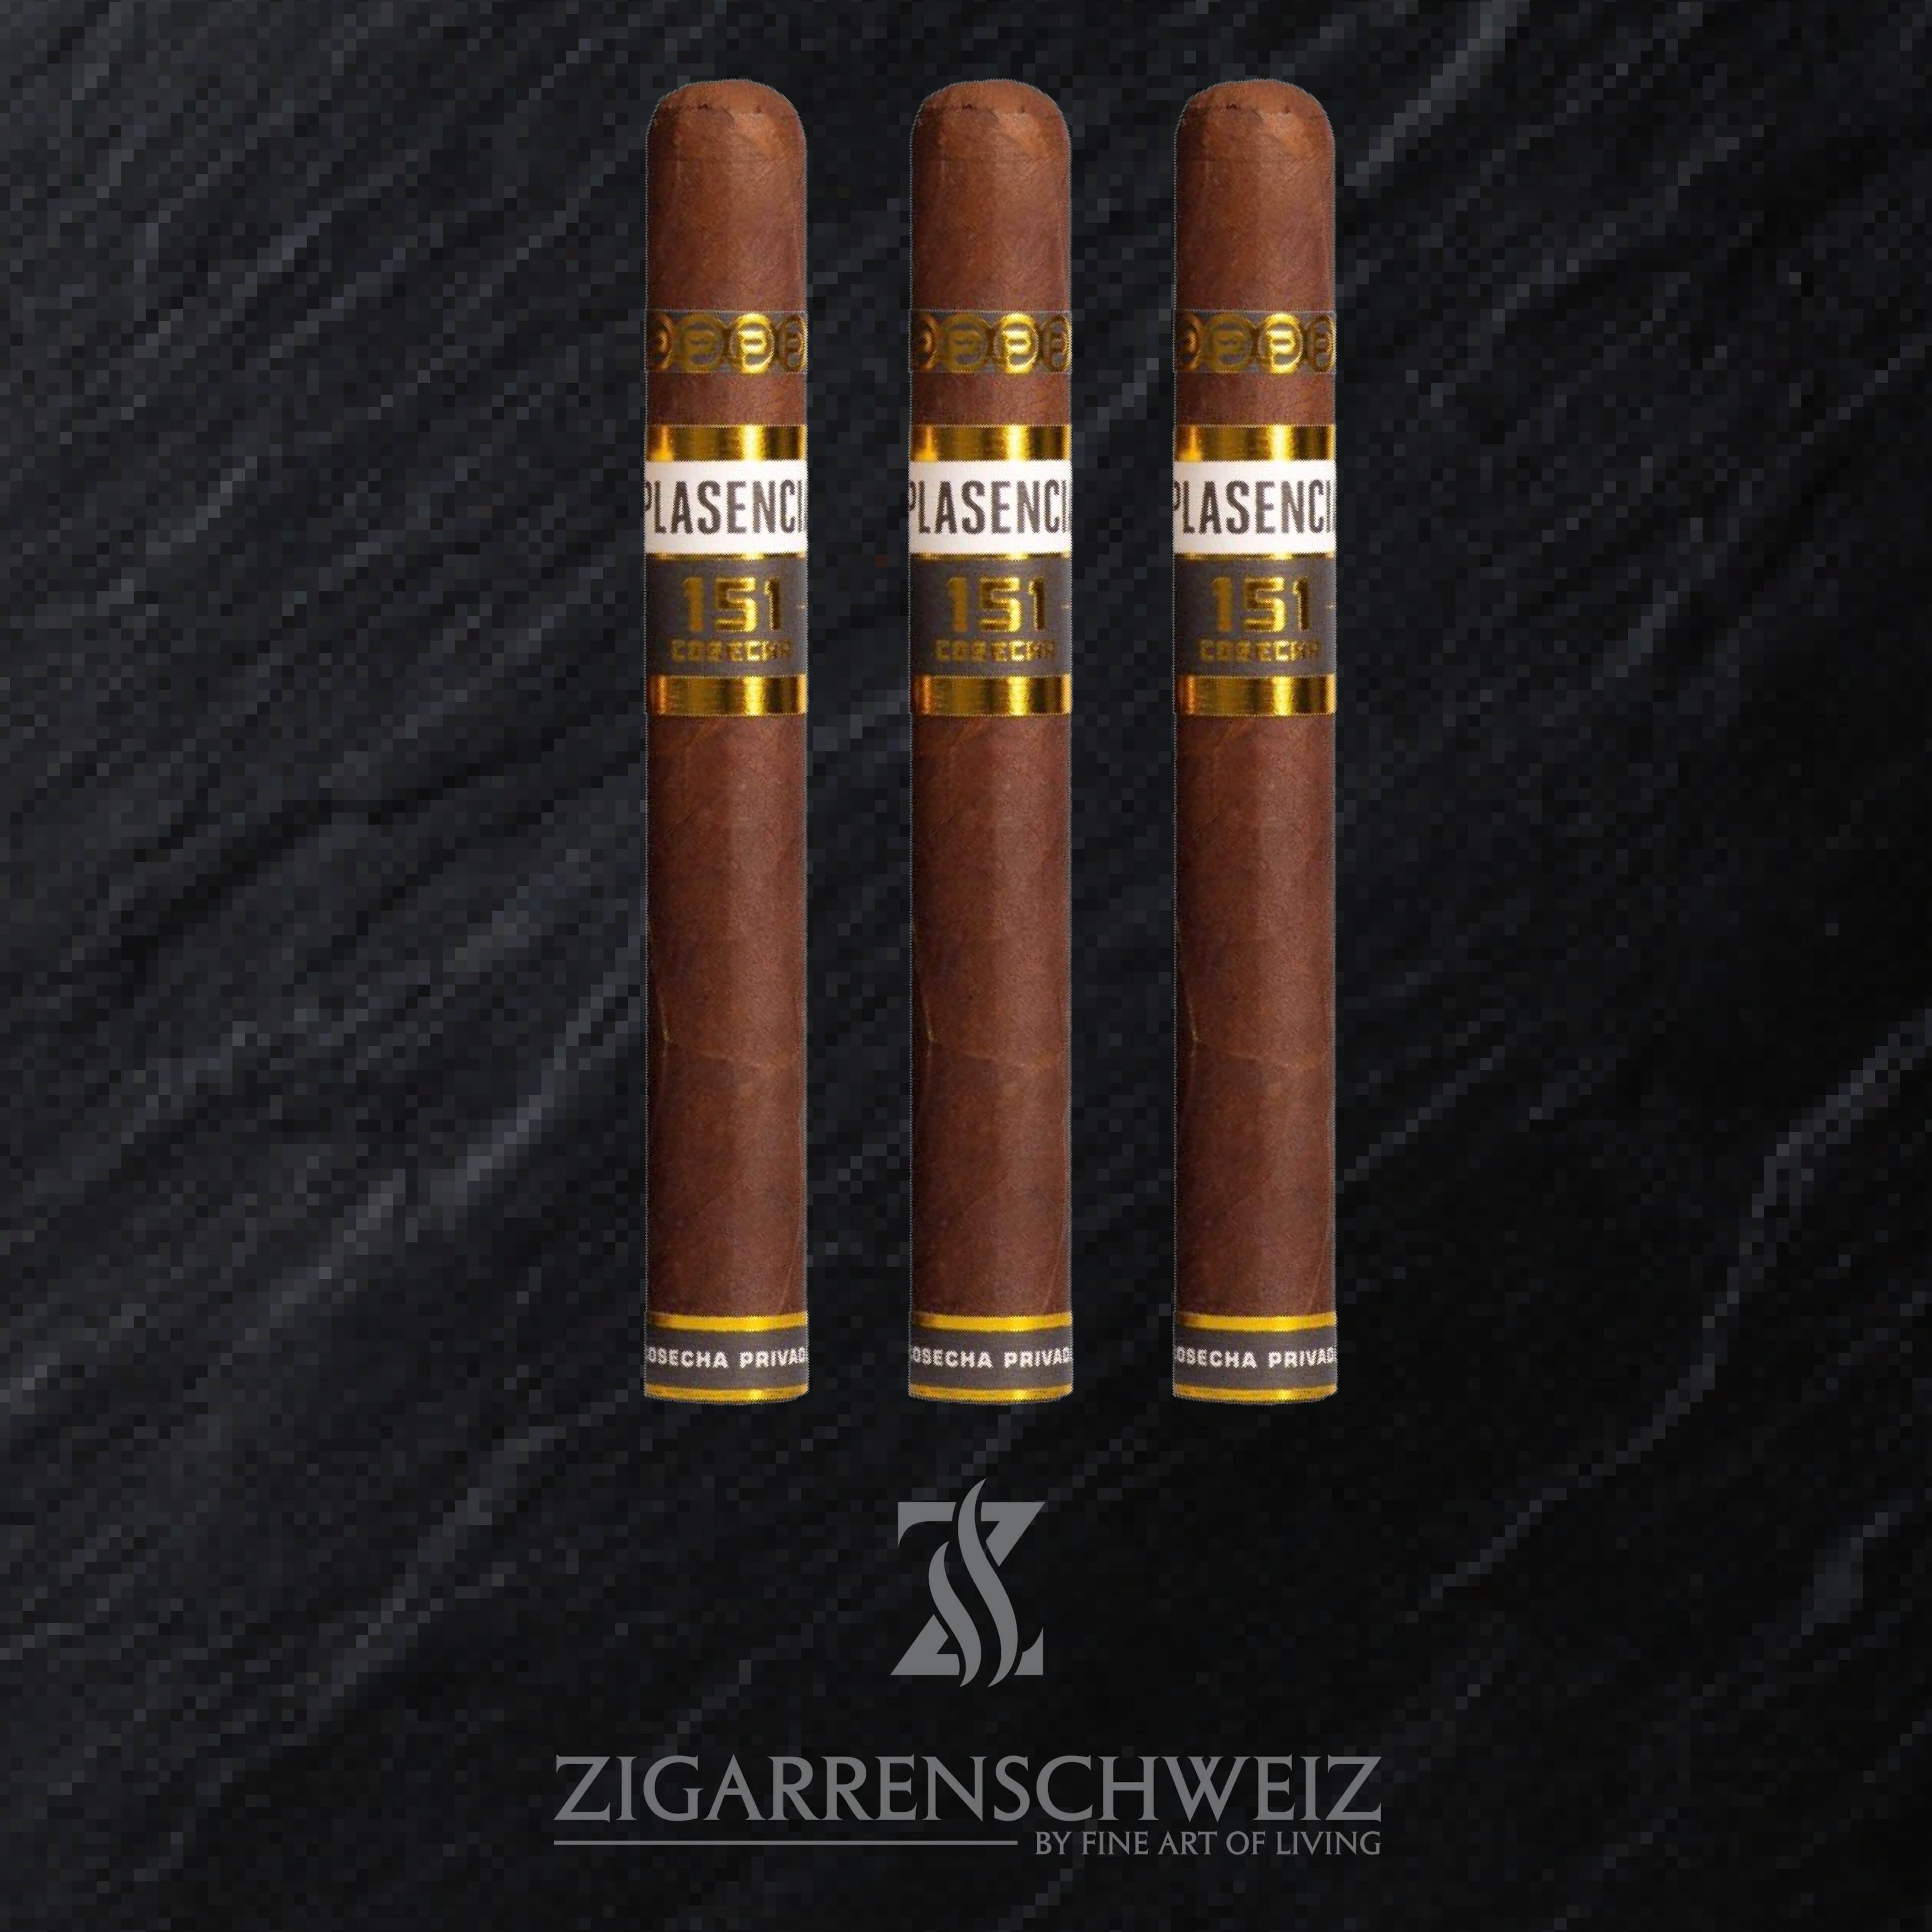 Plasencia Cosecha 151 San Diego (Corona Gorda) Zigarren 3er Etui von Zigarren Schweiz